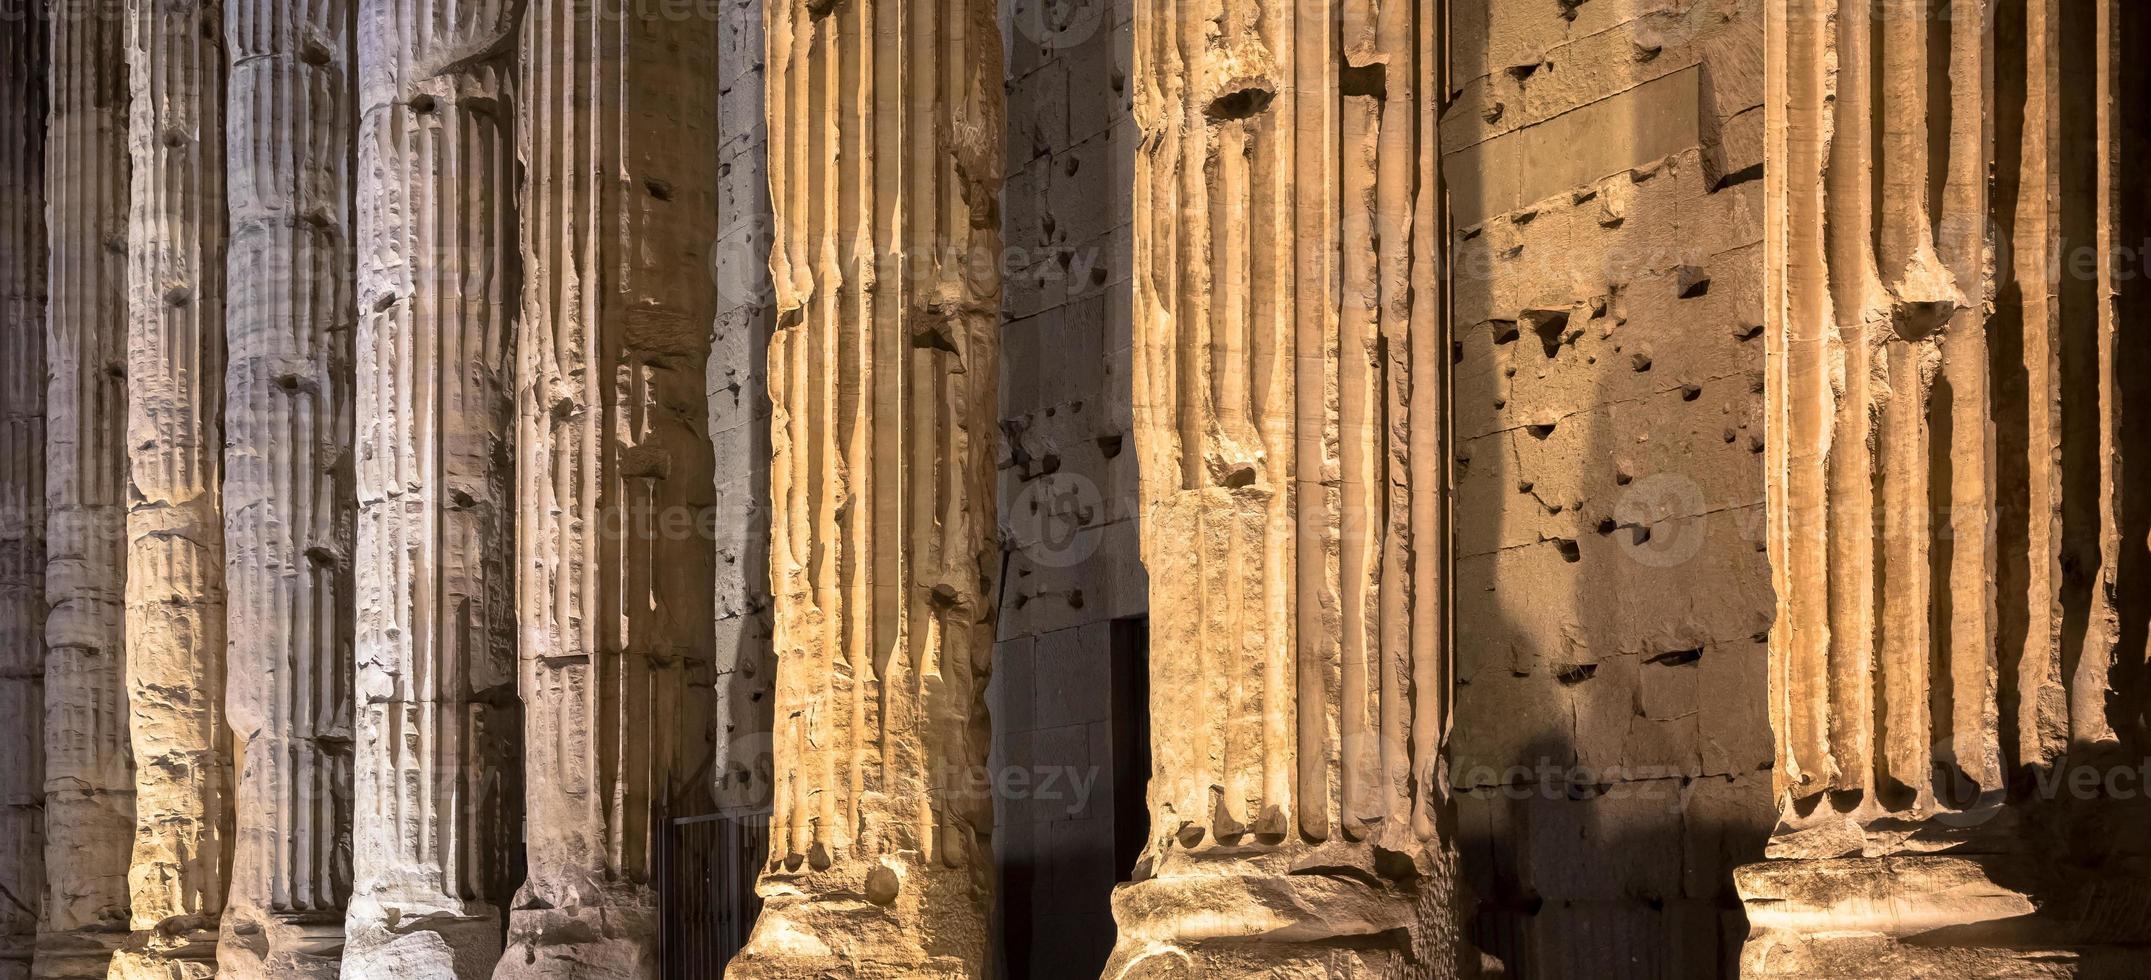 Dettaglio della colonna illuminata architettura del pantheon di notte, roma - italia foto